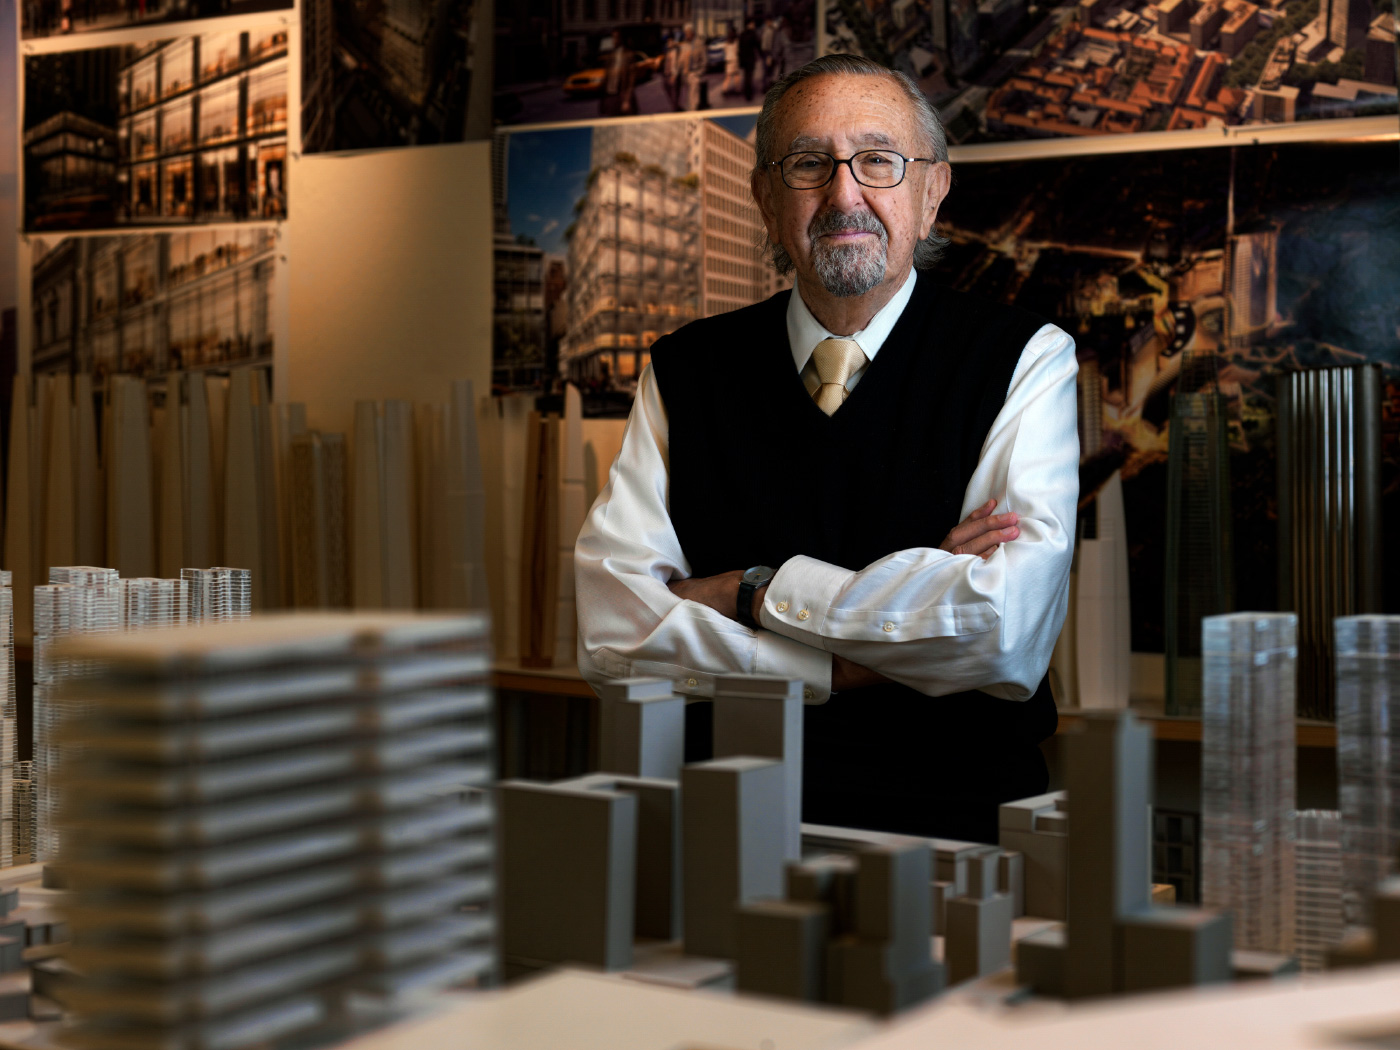 An older man, César Pelli, standing among building models